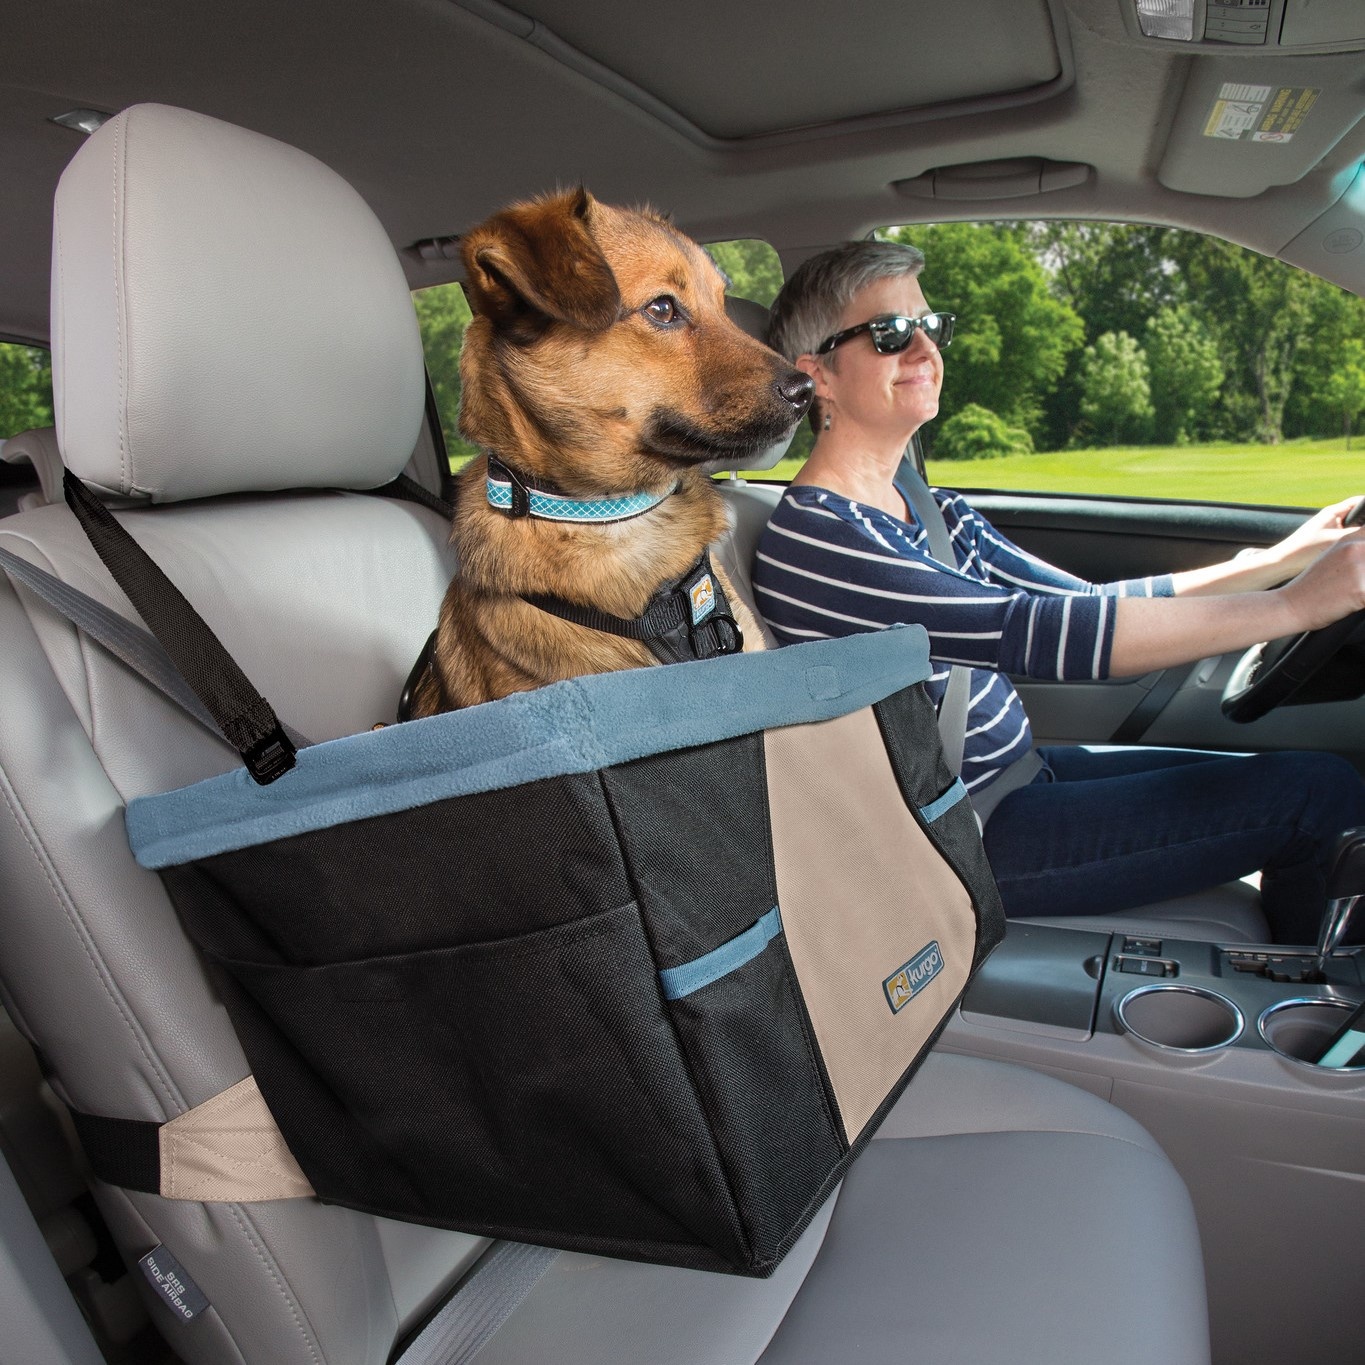 openbaring Geval Resistent Kurgo Rover Booster Seat - autostoel voor kleine honden | Max&Luna.nl -  Max&Luna